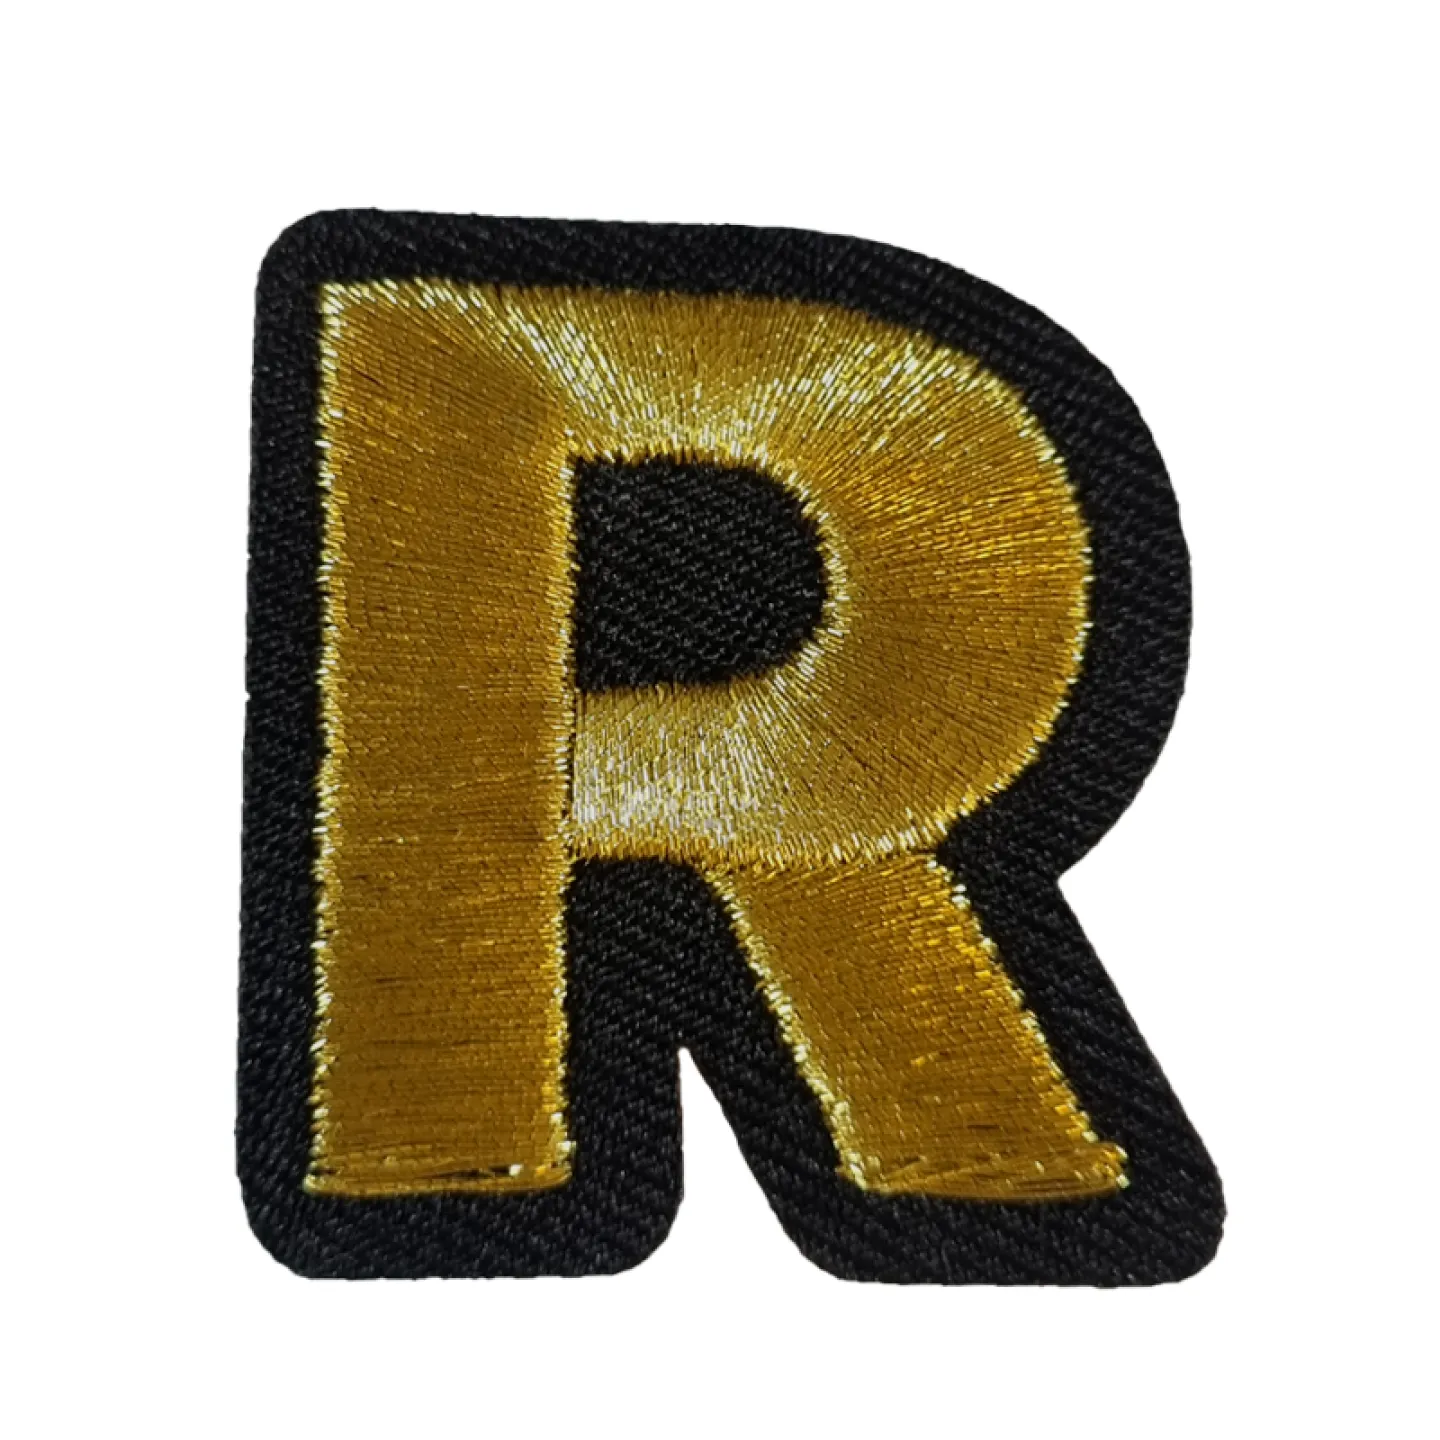 Kruikenstad embleem gouden letter R goedkoop.